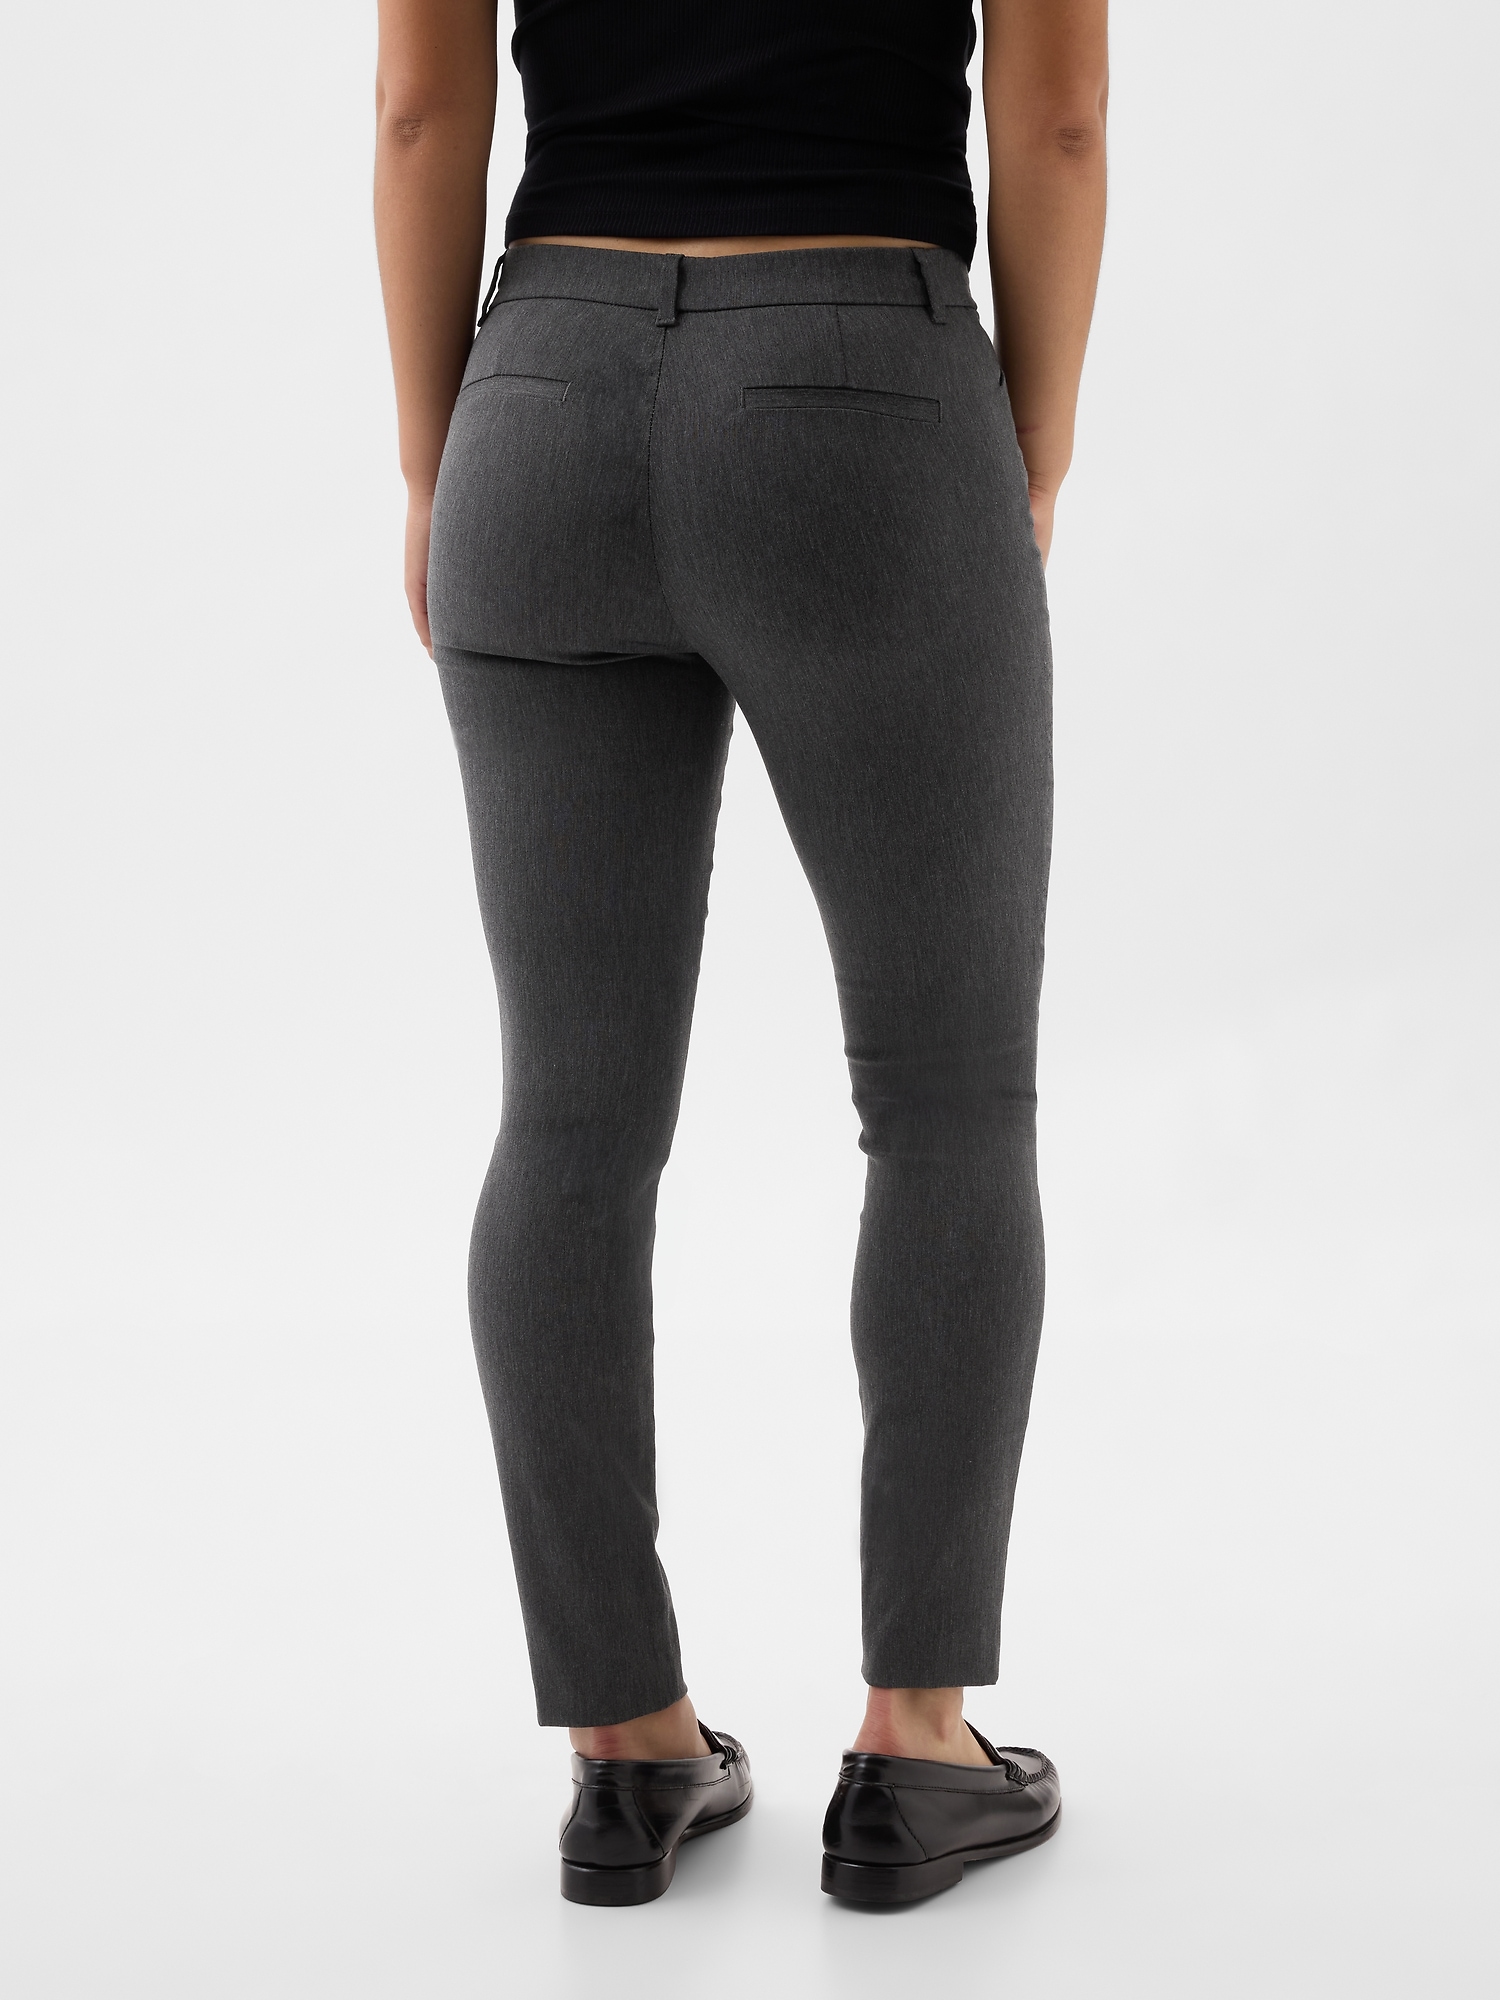 Who What Wear Stretch Black Pants Rayon Nylon Spandex Blend Zip Back Size  26 